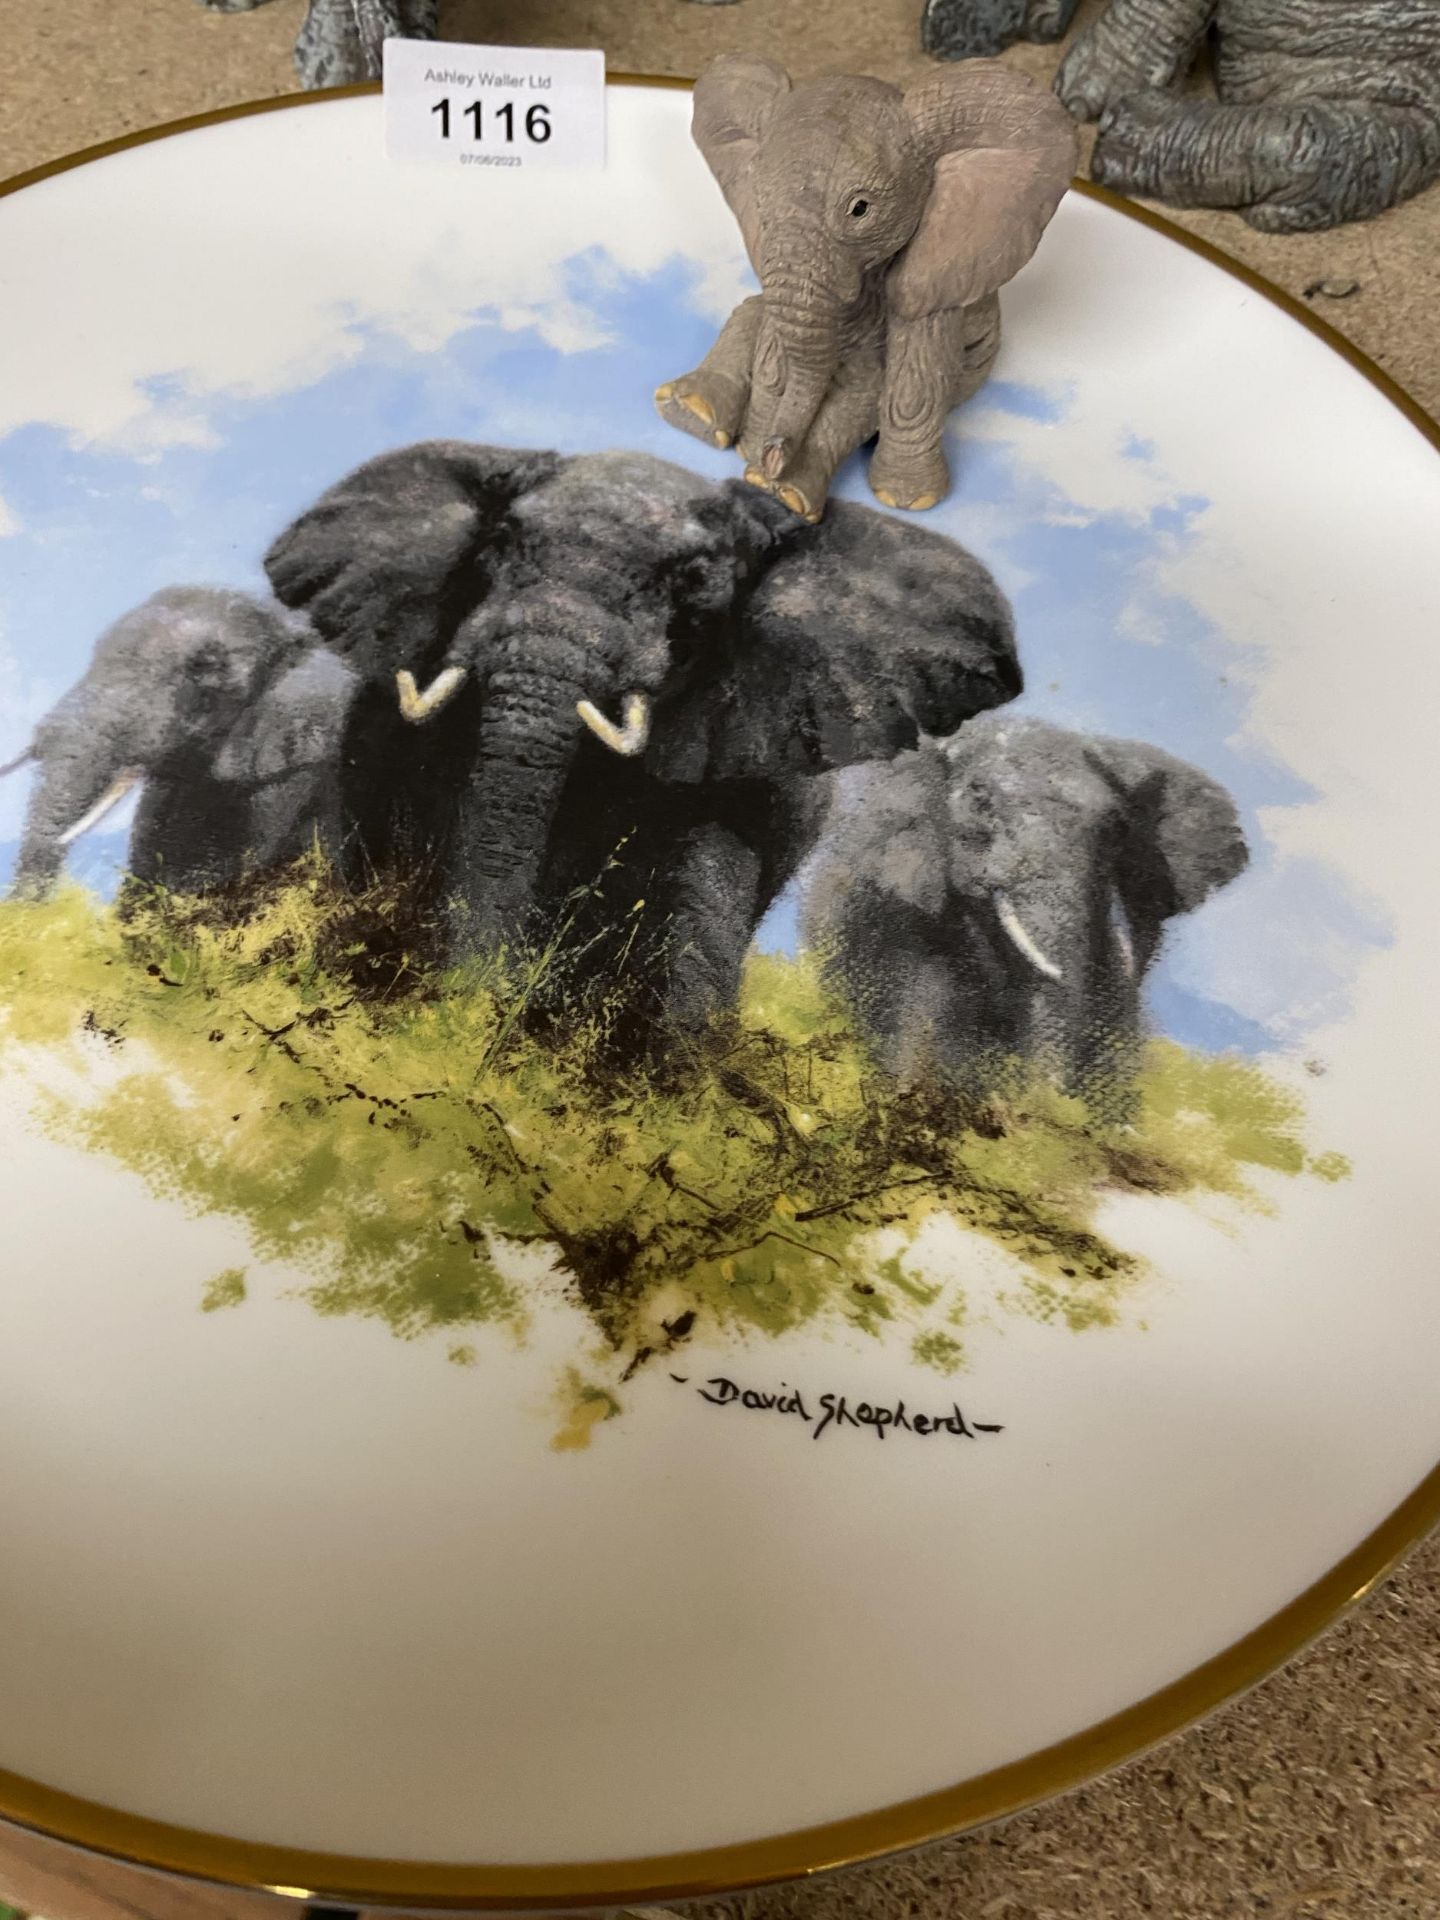 A COLLECTION OF ELEPHANTS, WEDGWOOD DAVID SHEPHERD PLATE, GLASS ELEPHANTS MODEL ETC - Image 2 of 4